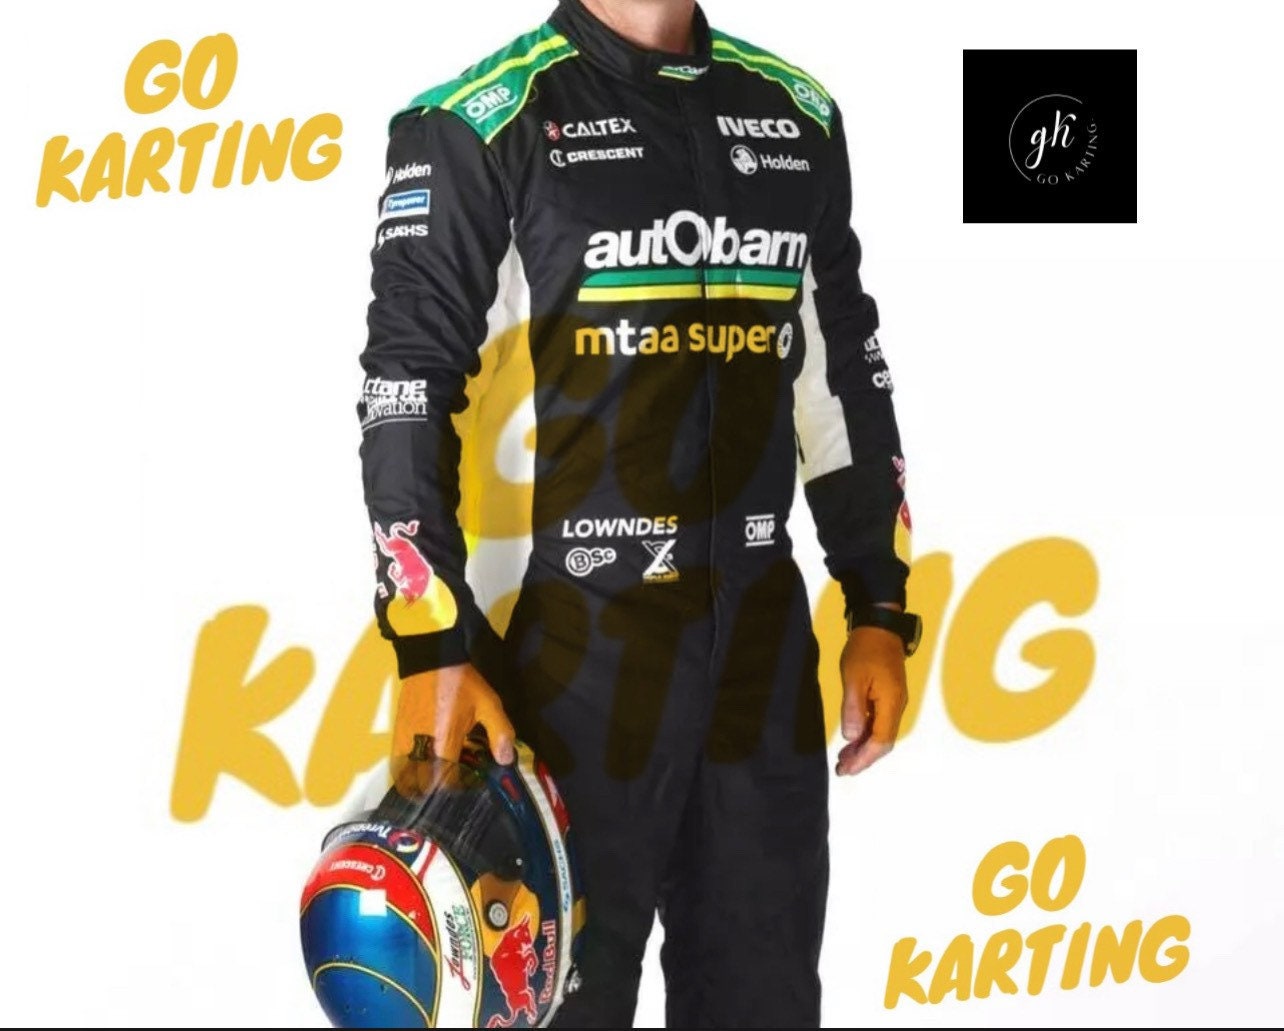 Lowndes Supercar Racing Suit Karting Suit Go Kart Race suit Motorsports Suit 